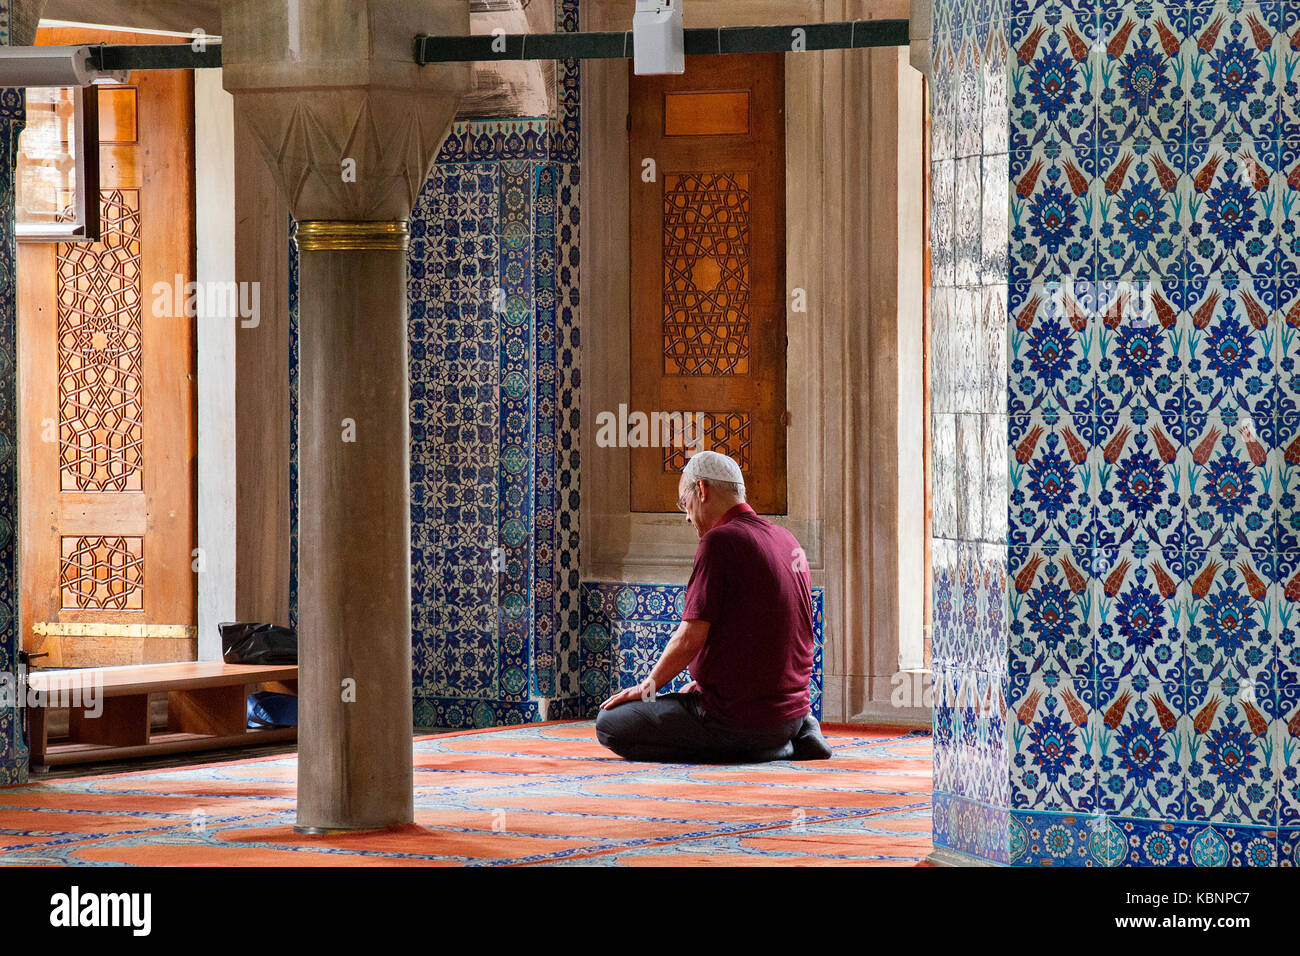 Ein Einheimischer betet in der Rustem Pascha Moschee in Istanbul, Türkei. Stockfoto